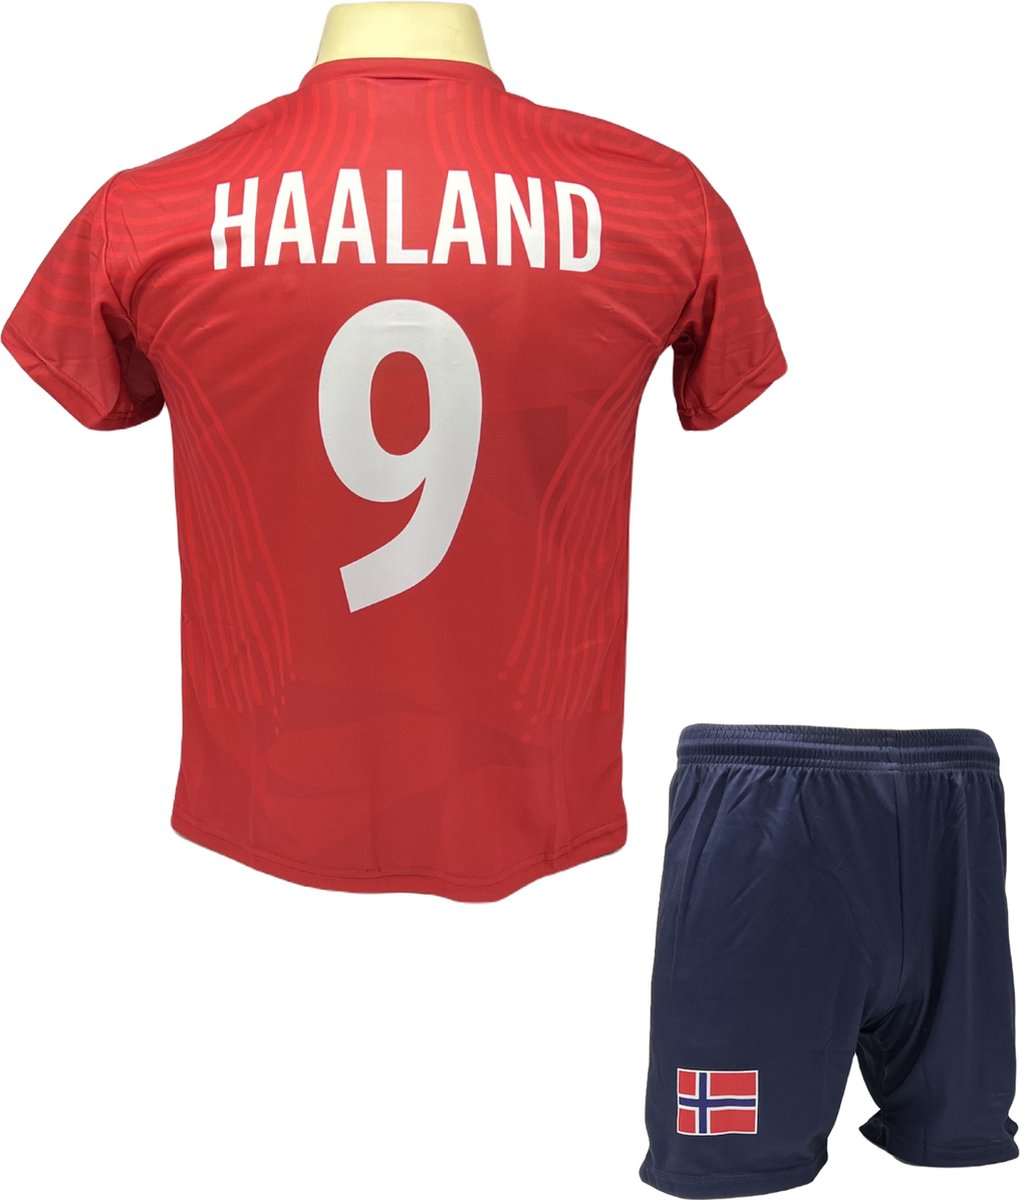 Haaland Voetbalshirt en Broekje Voetbaltenue Noorwegen - Maat 152